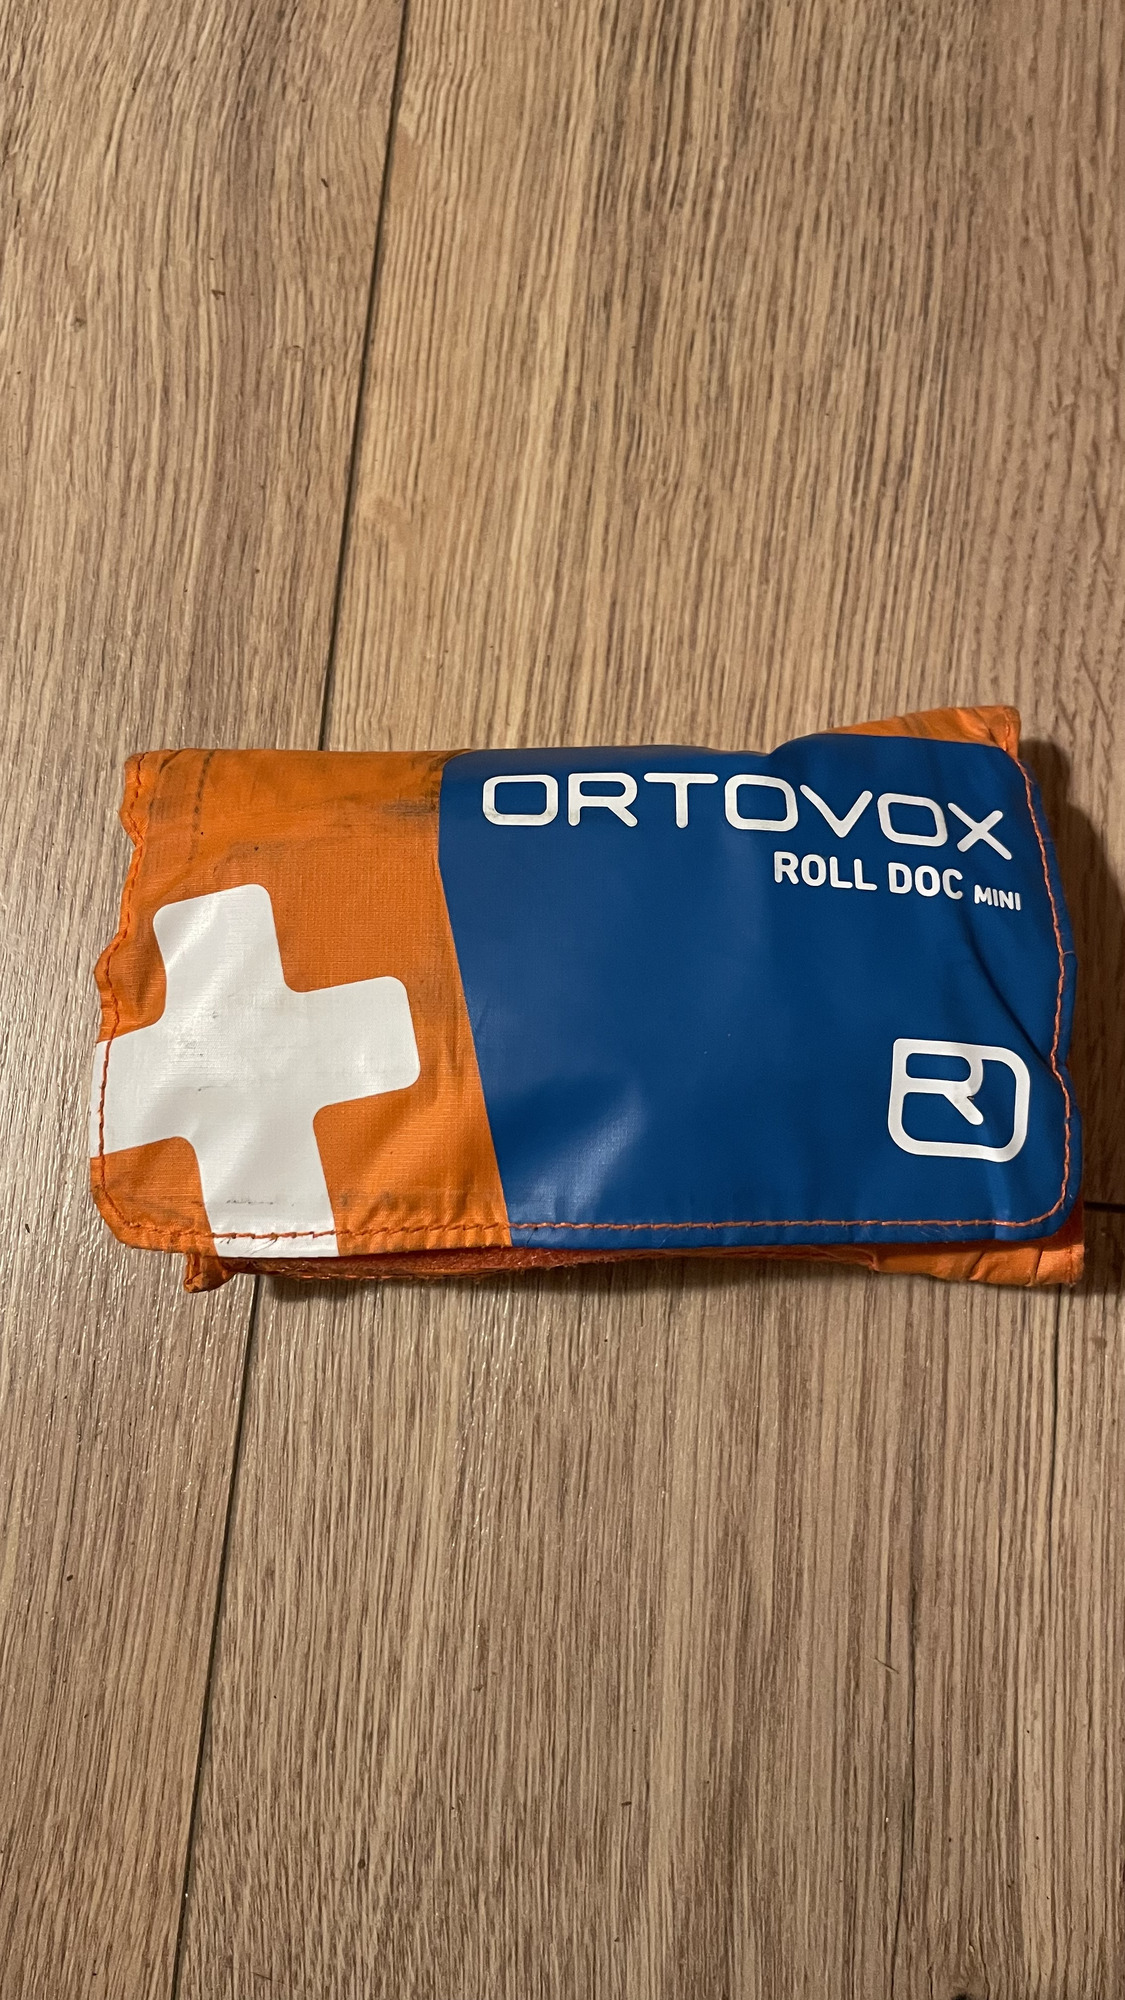 Ortovox First aid roll doc mini